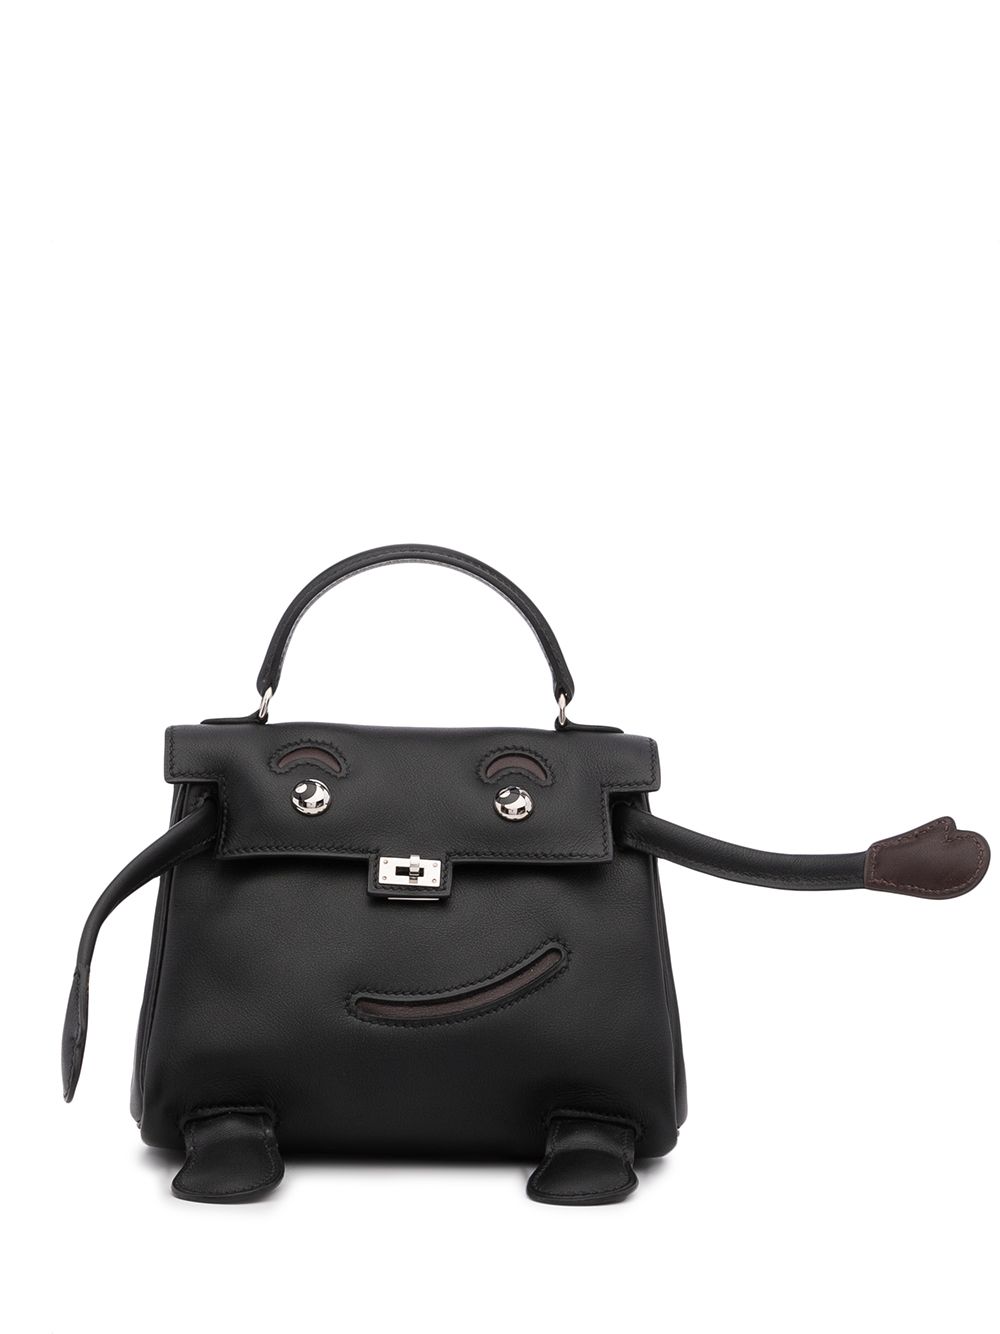 фото Hermès мини-сумка kelly 15 doll mascot 2000-х годов